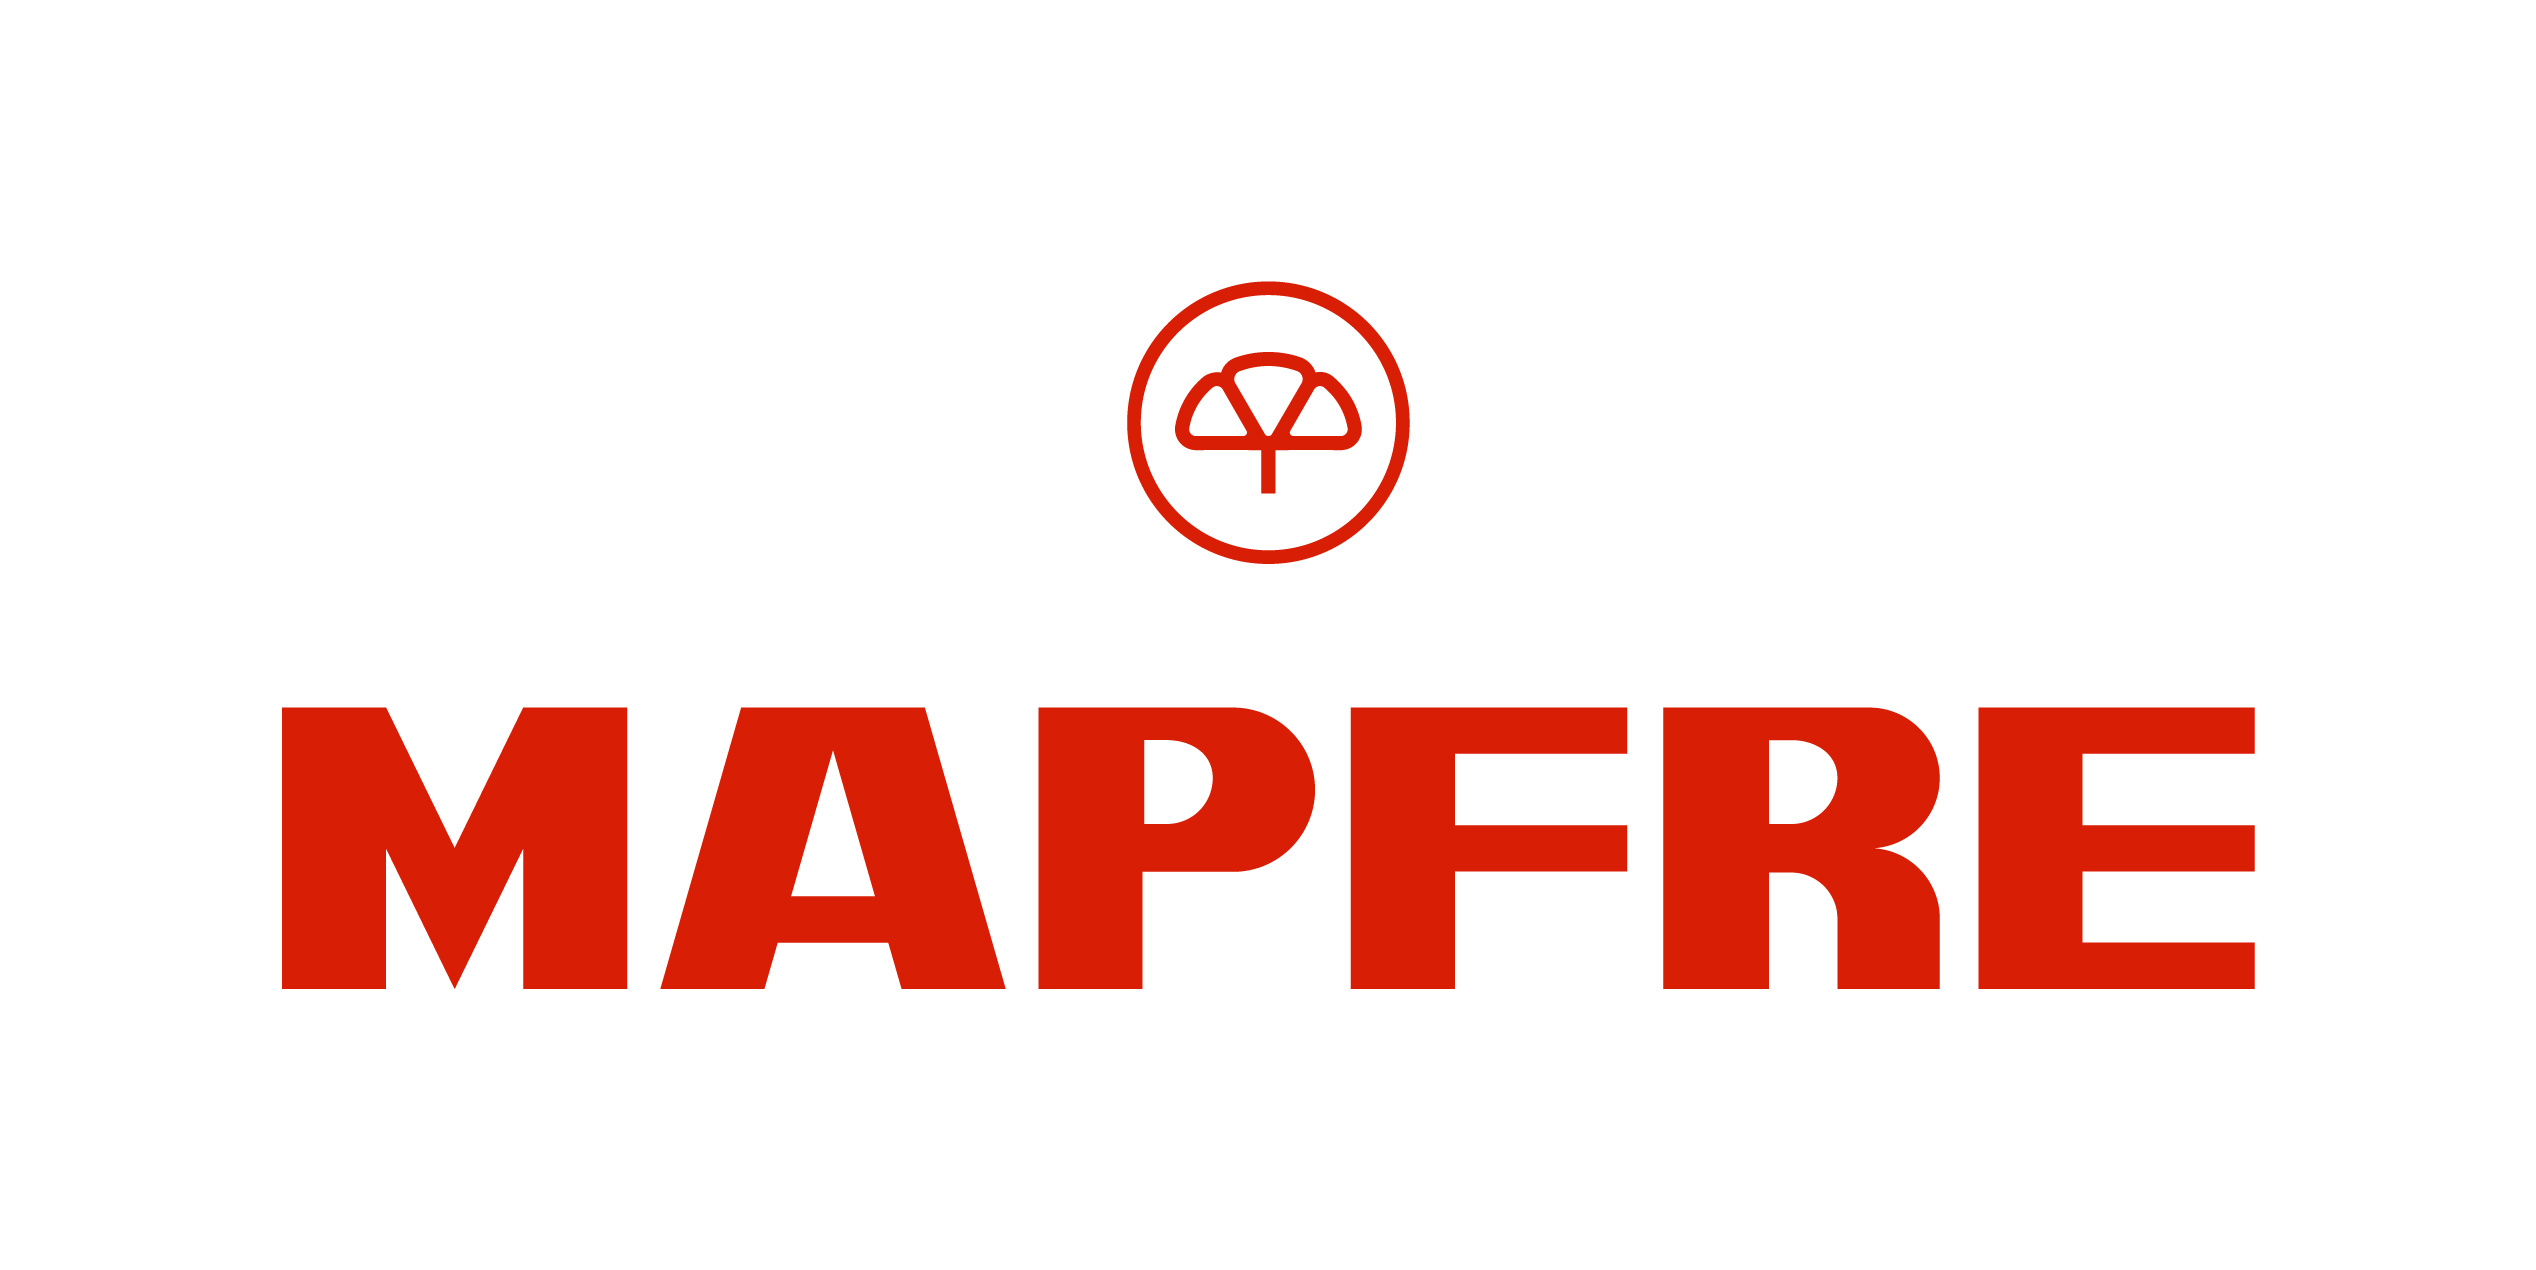 Mapfre Brand Logo